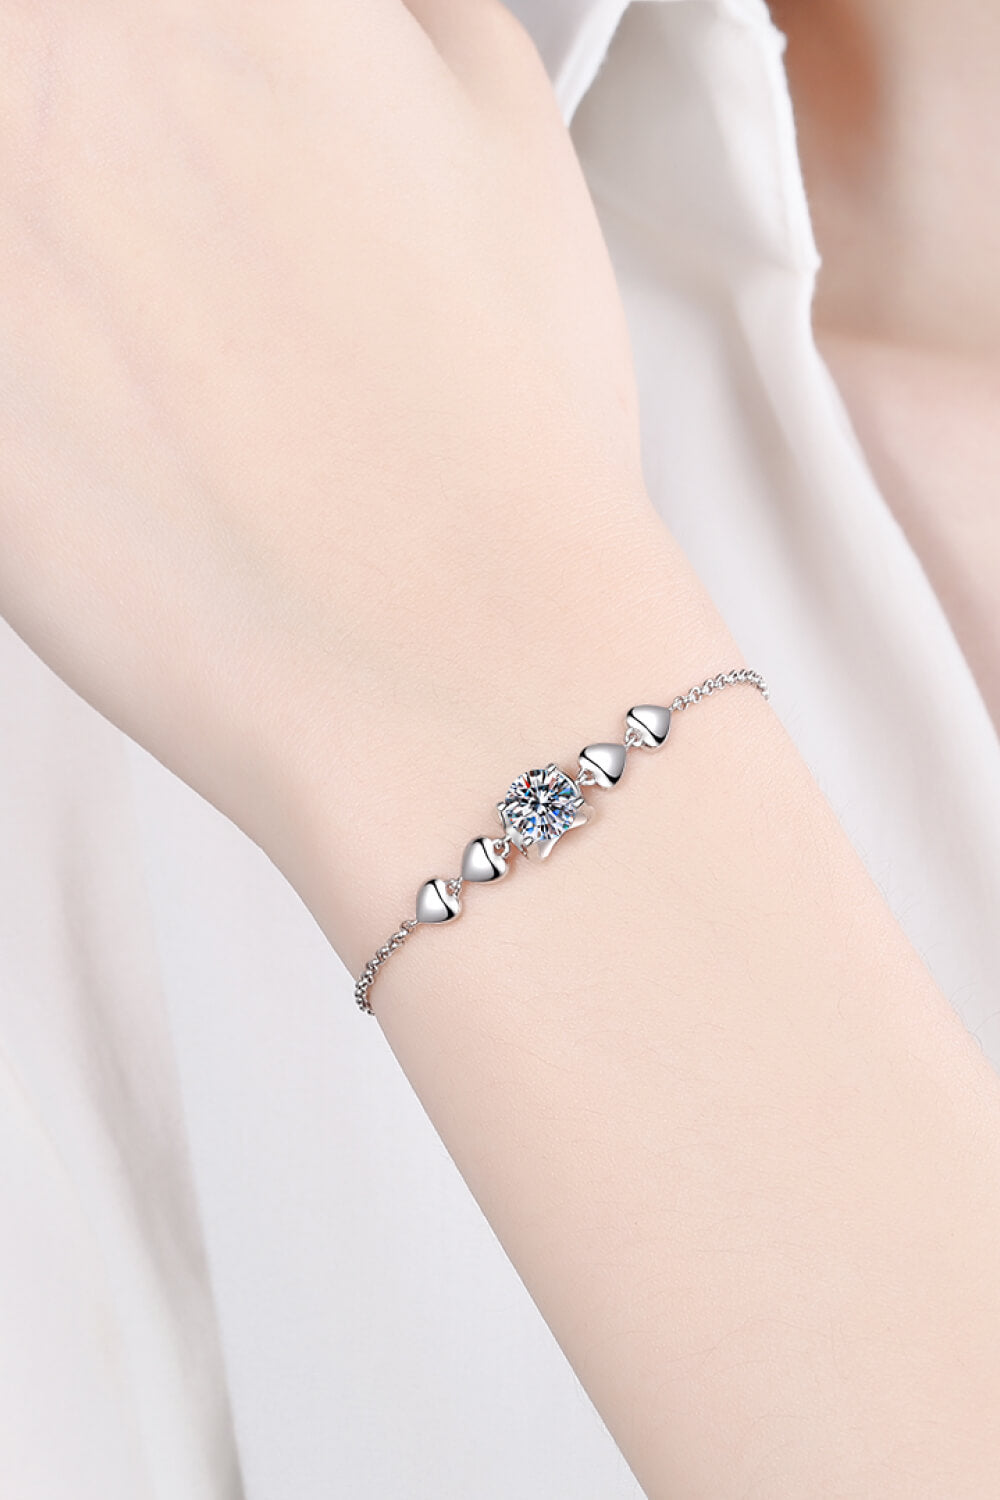 1 Carat Moissanite Heart Bracelet - Silver / One Size - Women’s Jewelry - Bracelets - 1 - 2024